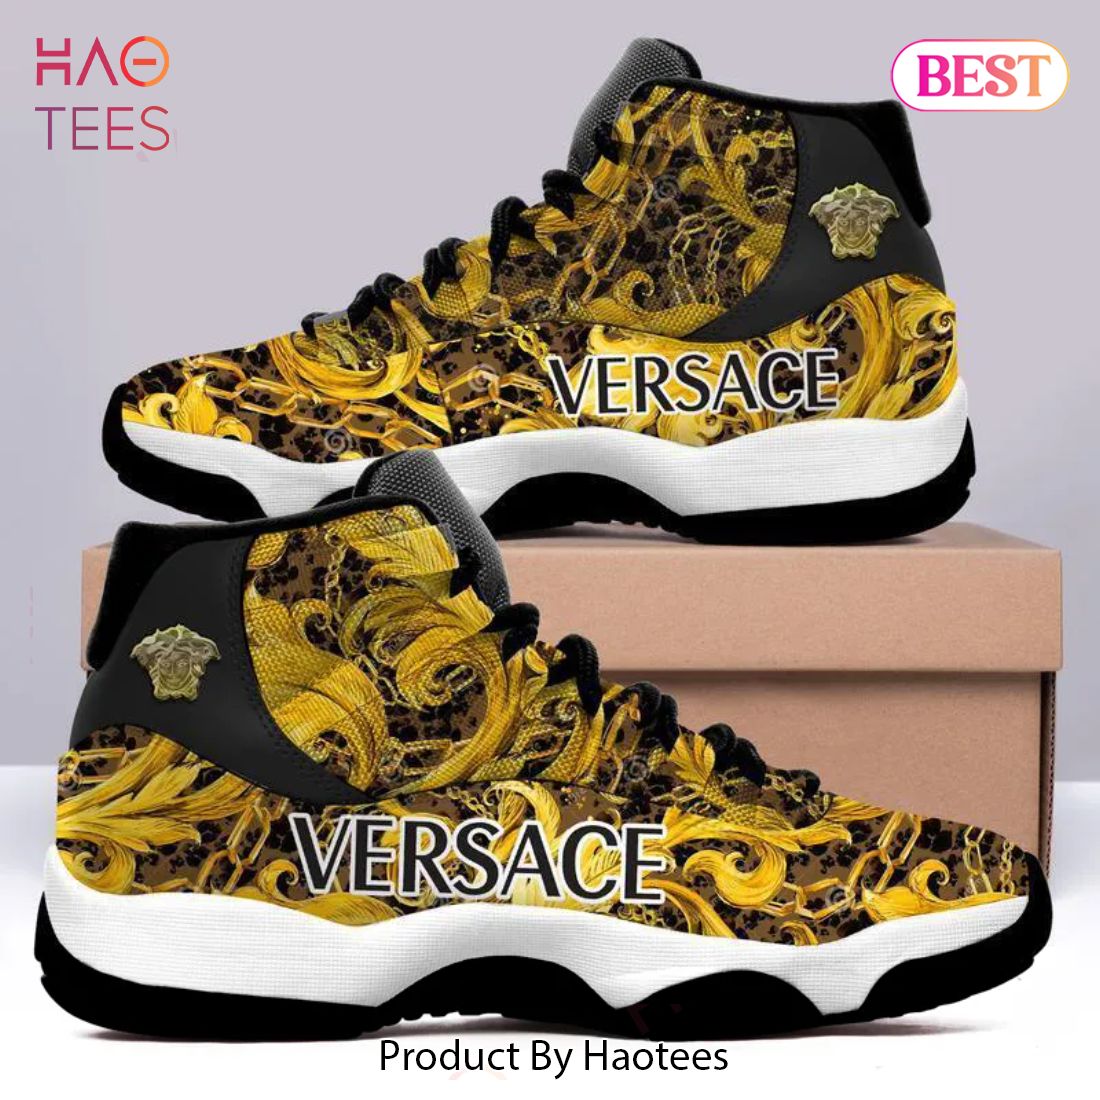 [NEW FASHION] Gianni Versace Barocco Air Jordan 11 Sneakers Shoes Hot 2023 Gifts For Men Women